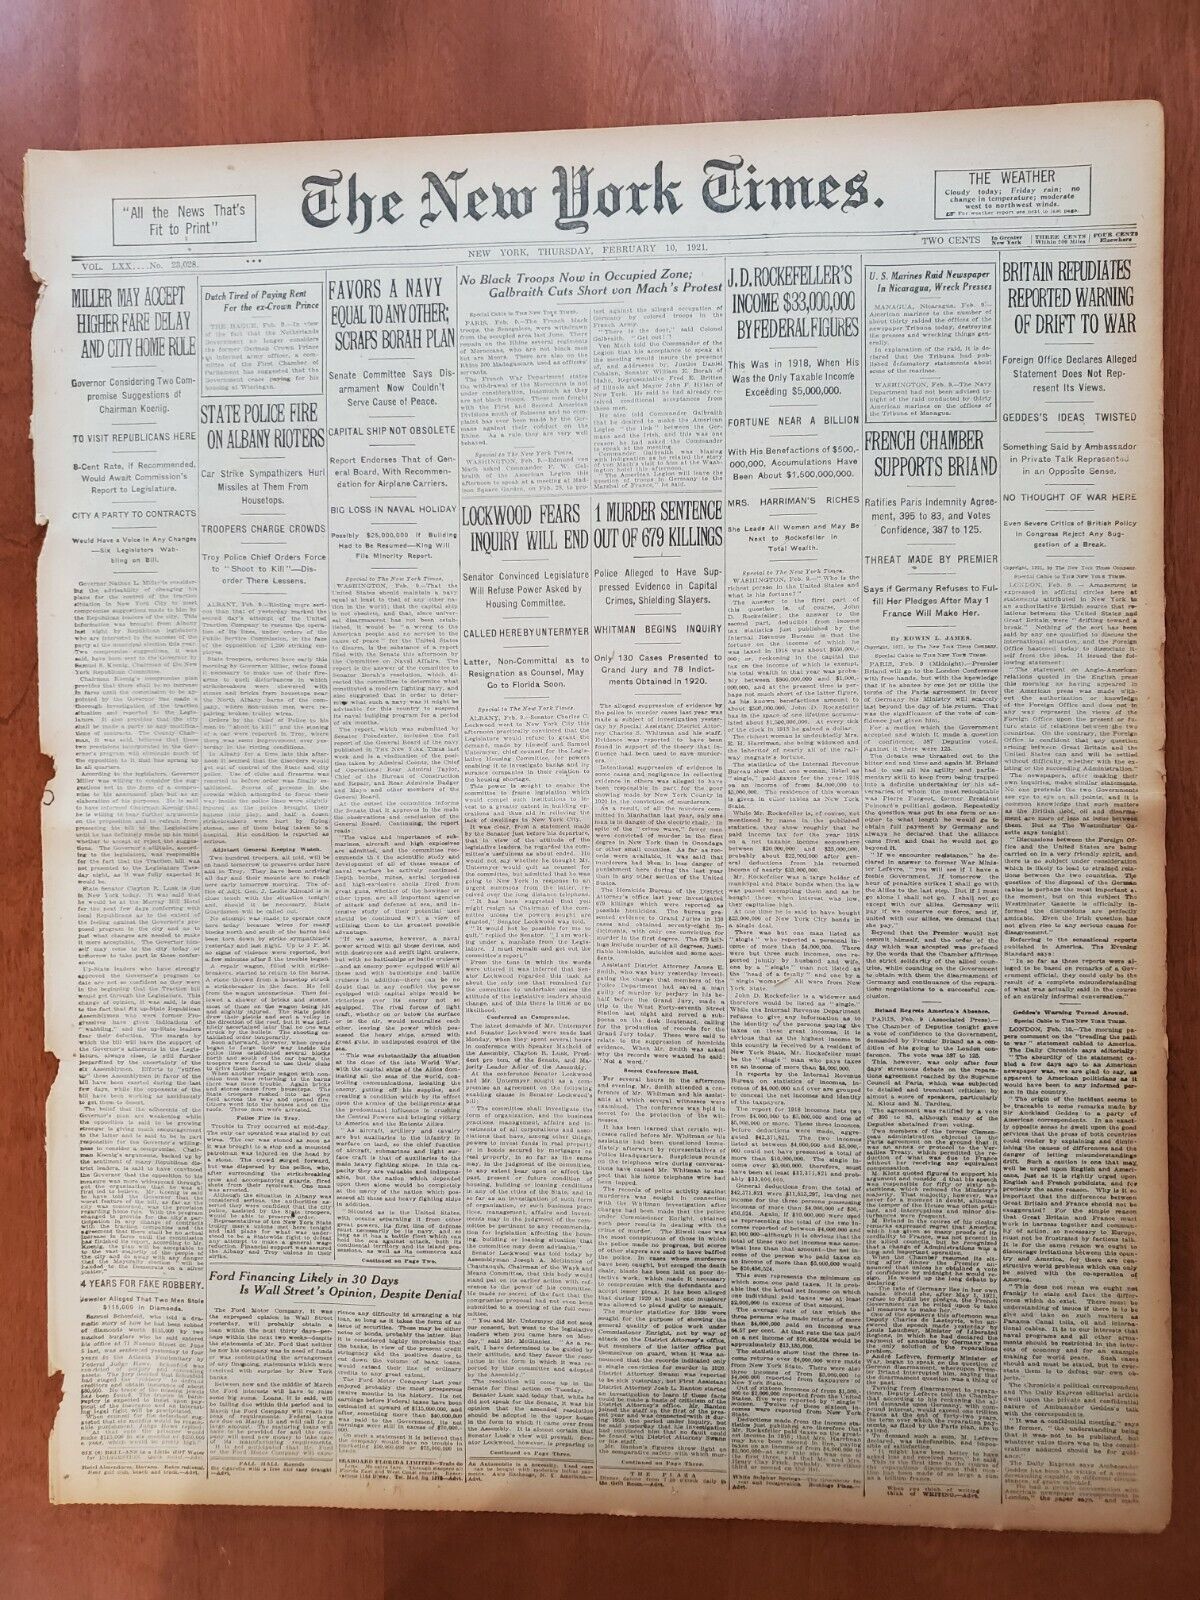 1921 FEBRUARY 10 NEW YORK TIMES -J.D. ROCKEFELLER'S INCOME $33,000,000 - NT 8119